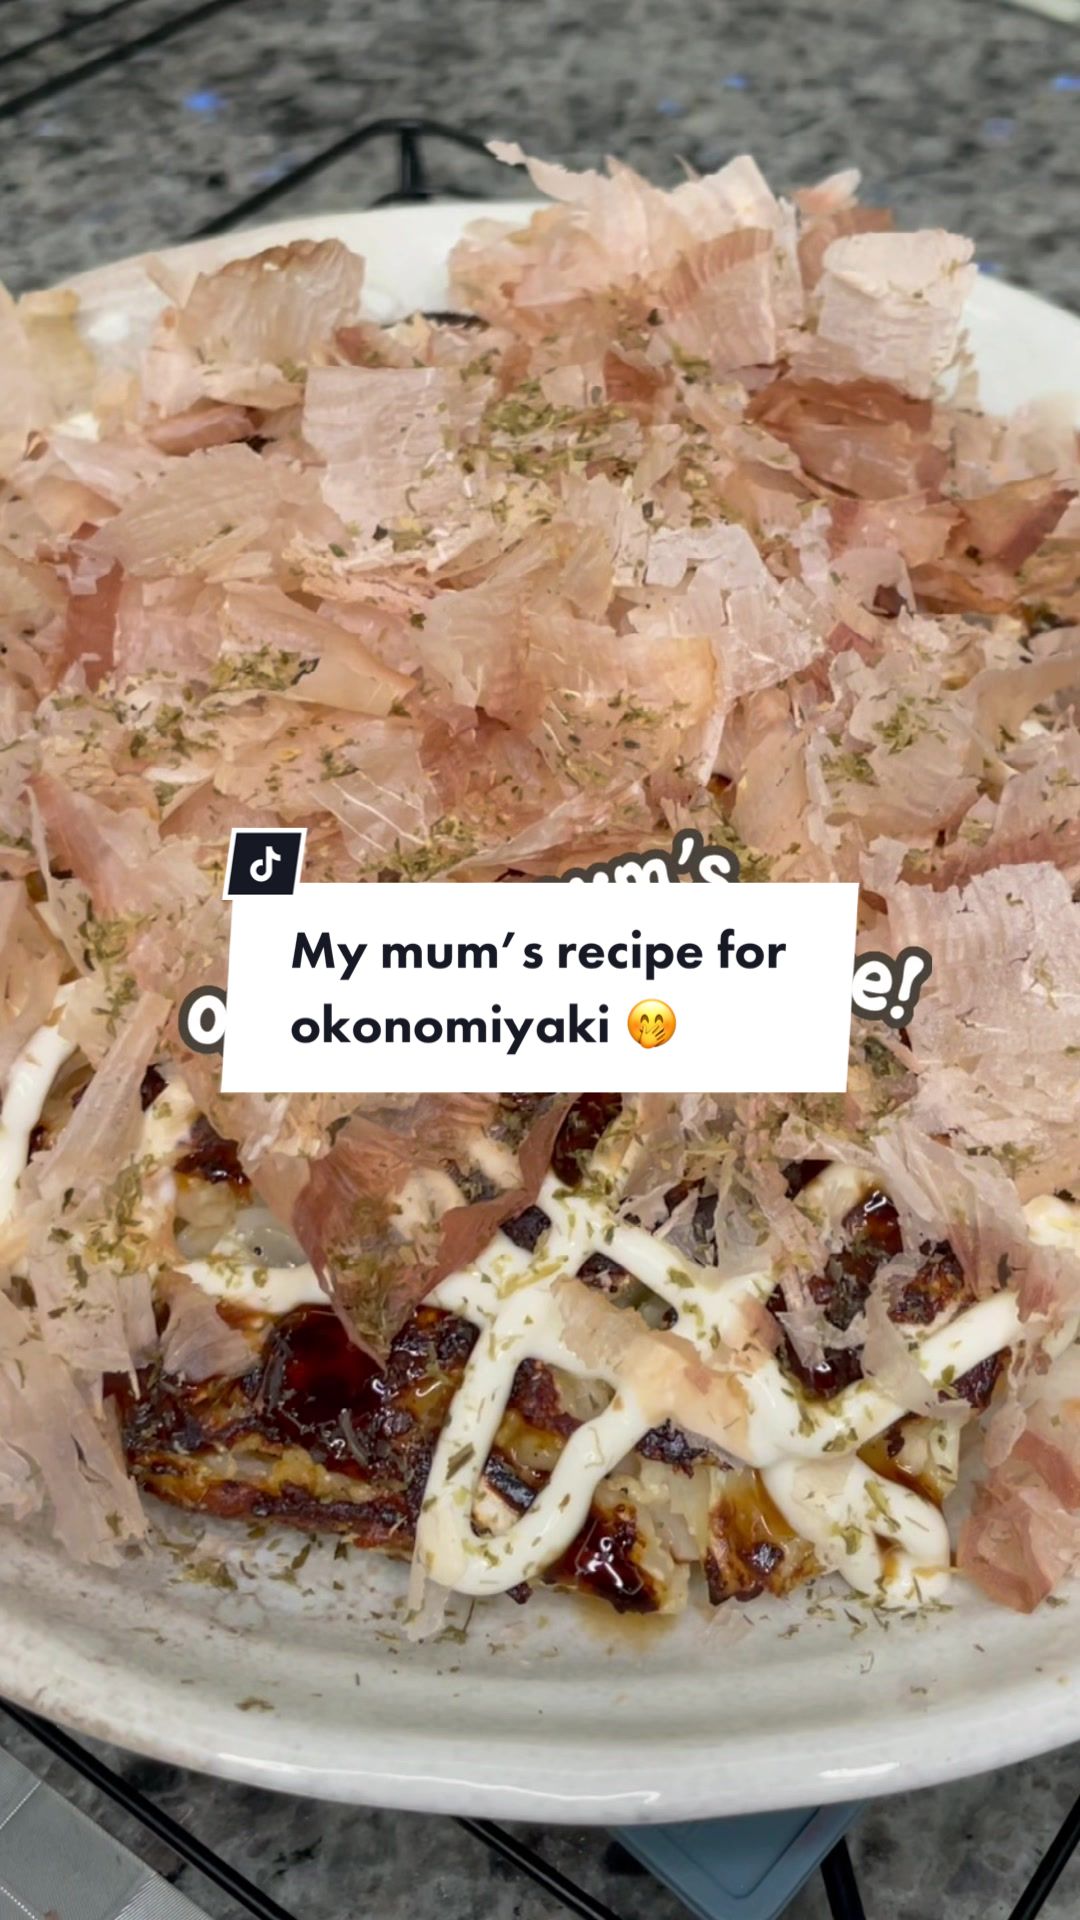 @Sharing my mum's recipe for Osaka-style okonomiyaki whi...